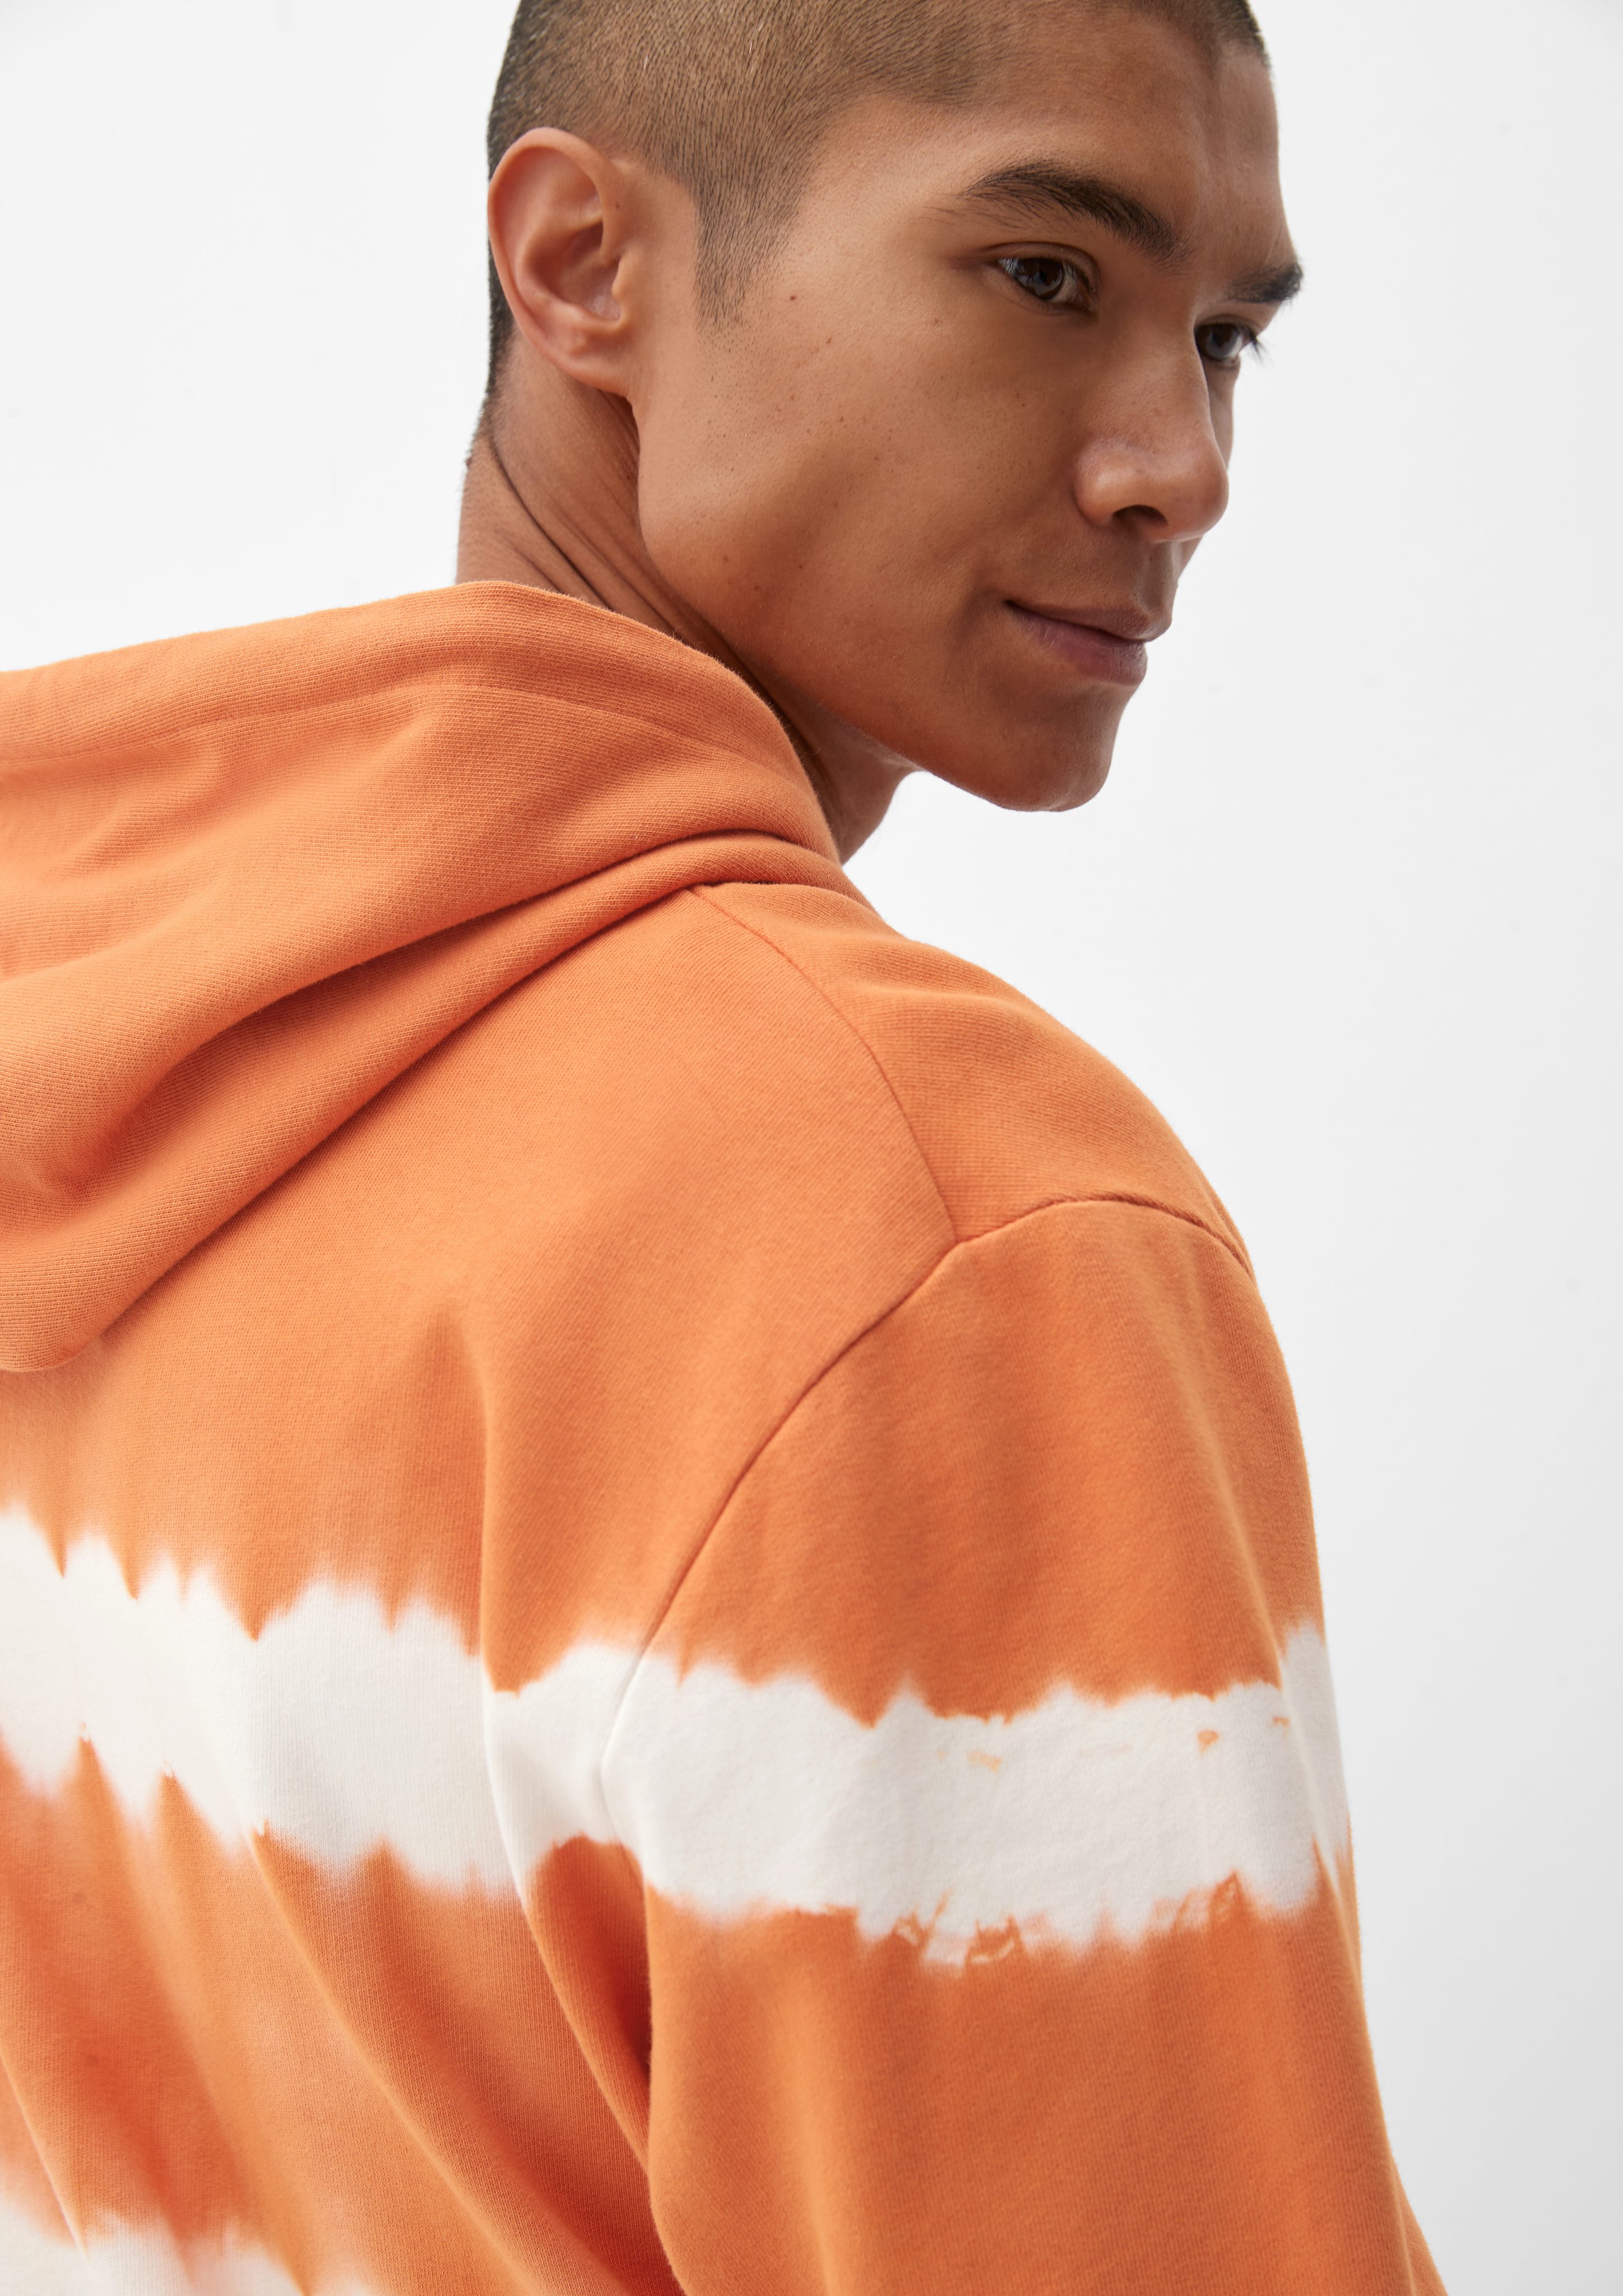 s.Oliver Sweatshirt mit Streifenmuster Dye Garment Hoodie orange